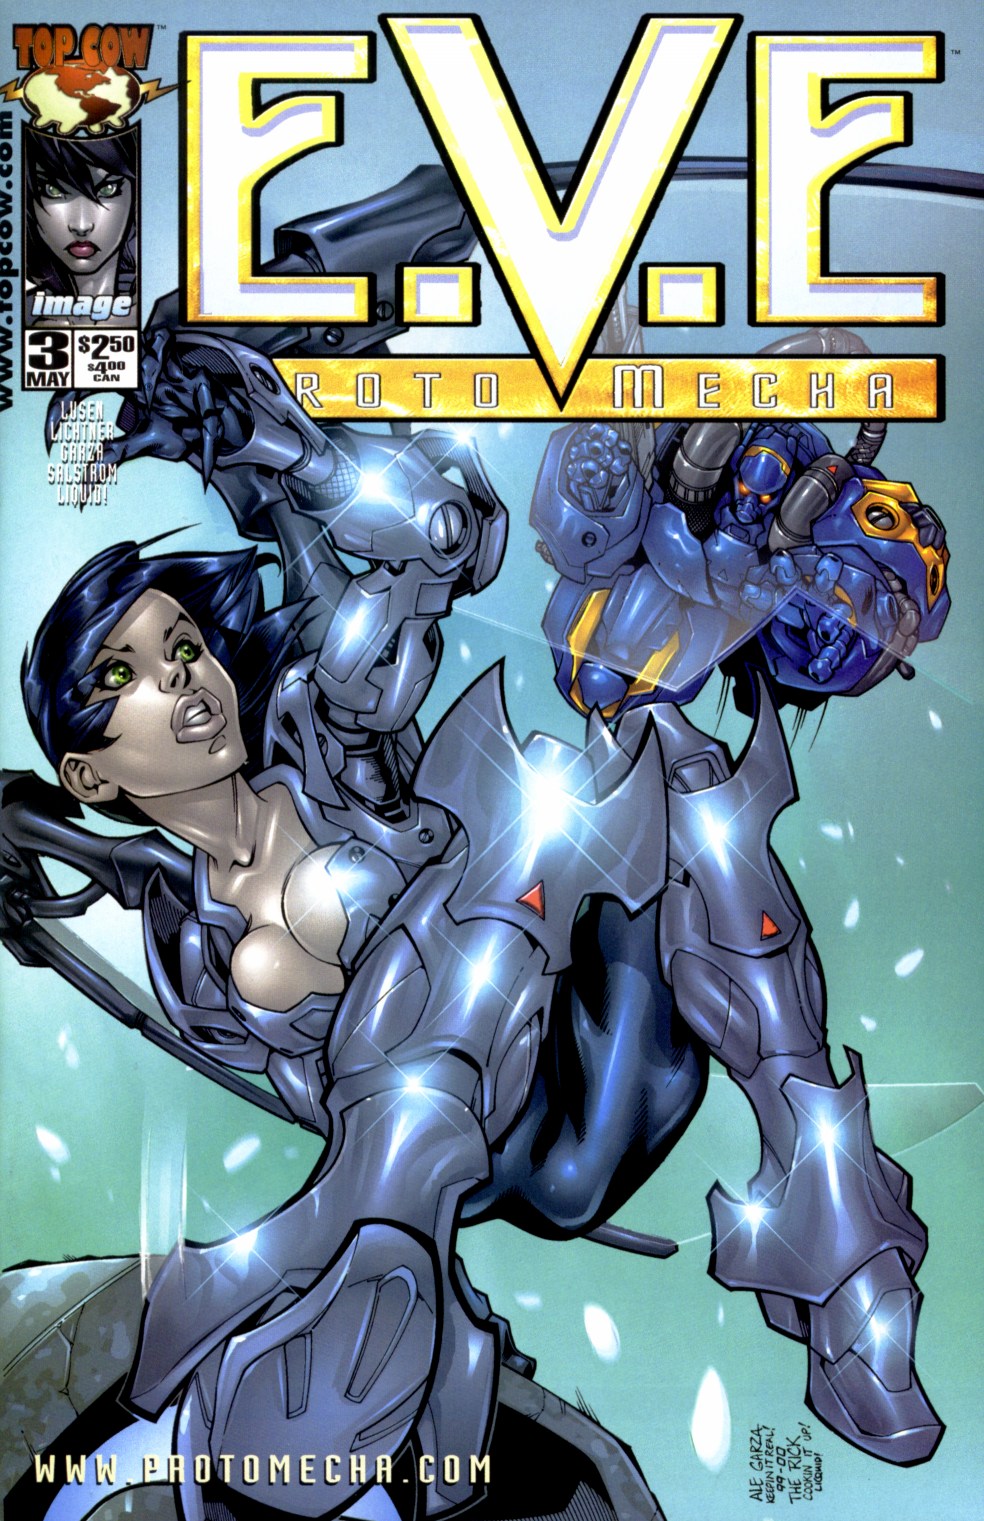 Read online E.V.E. ProtoMecha comic -  Issue #3 - 1